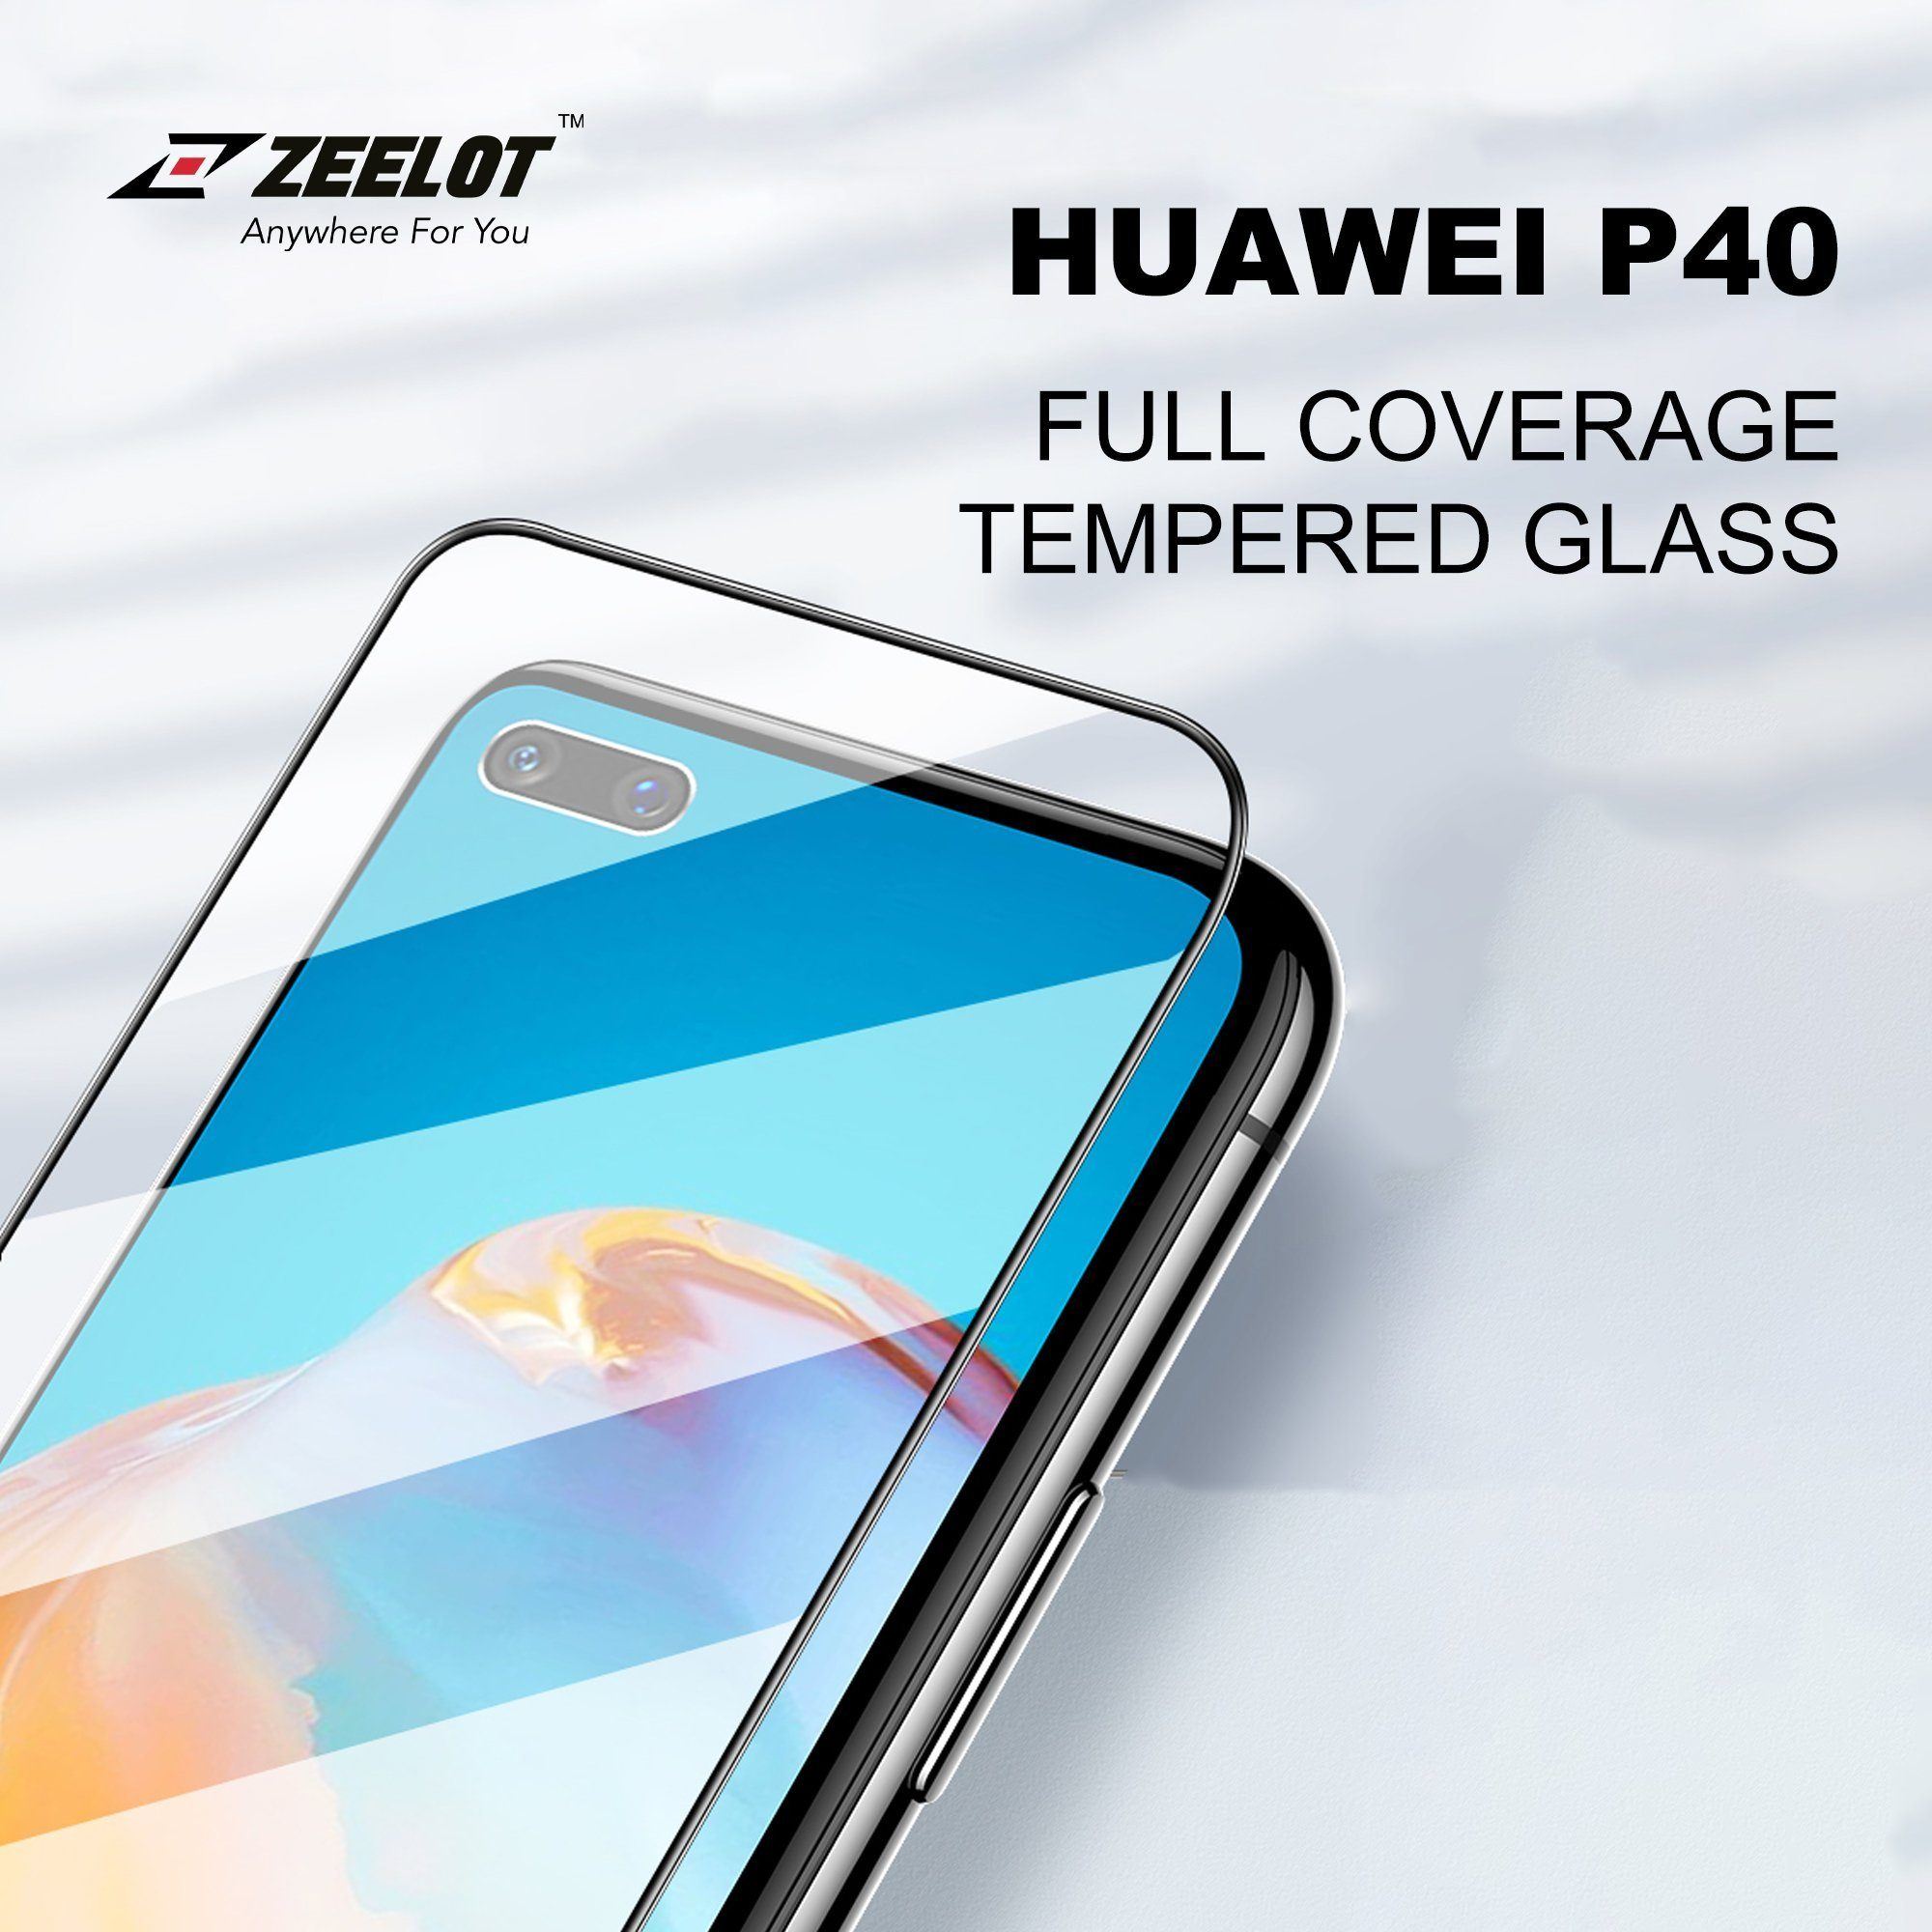 ZEELOT PureGlass 2.5D Tempered Glass Screen Protector for Huawei P40 (2020), Clear P40 ZEELOT 